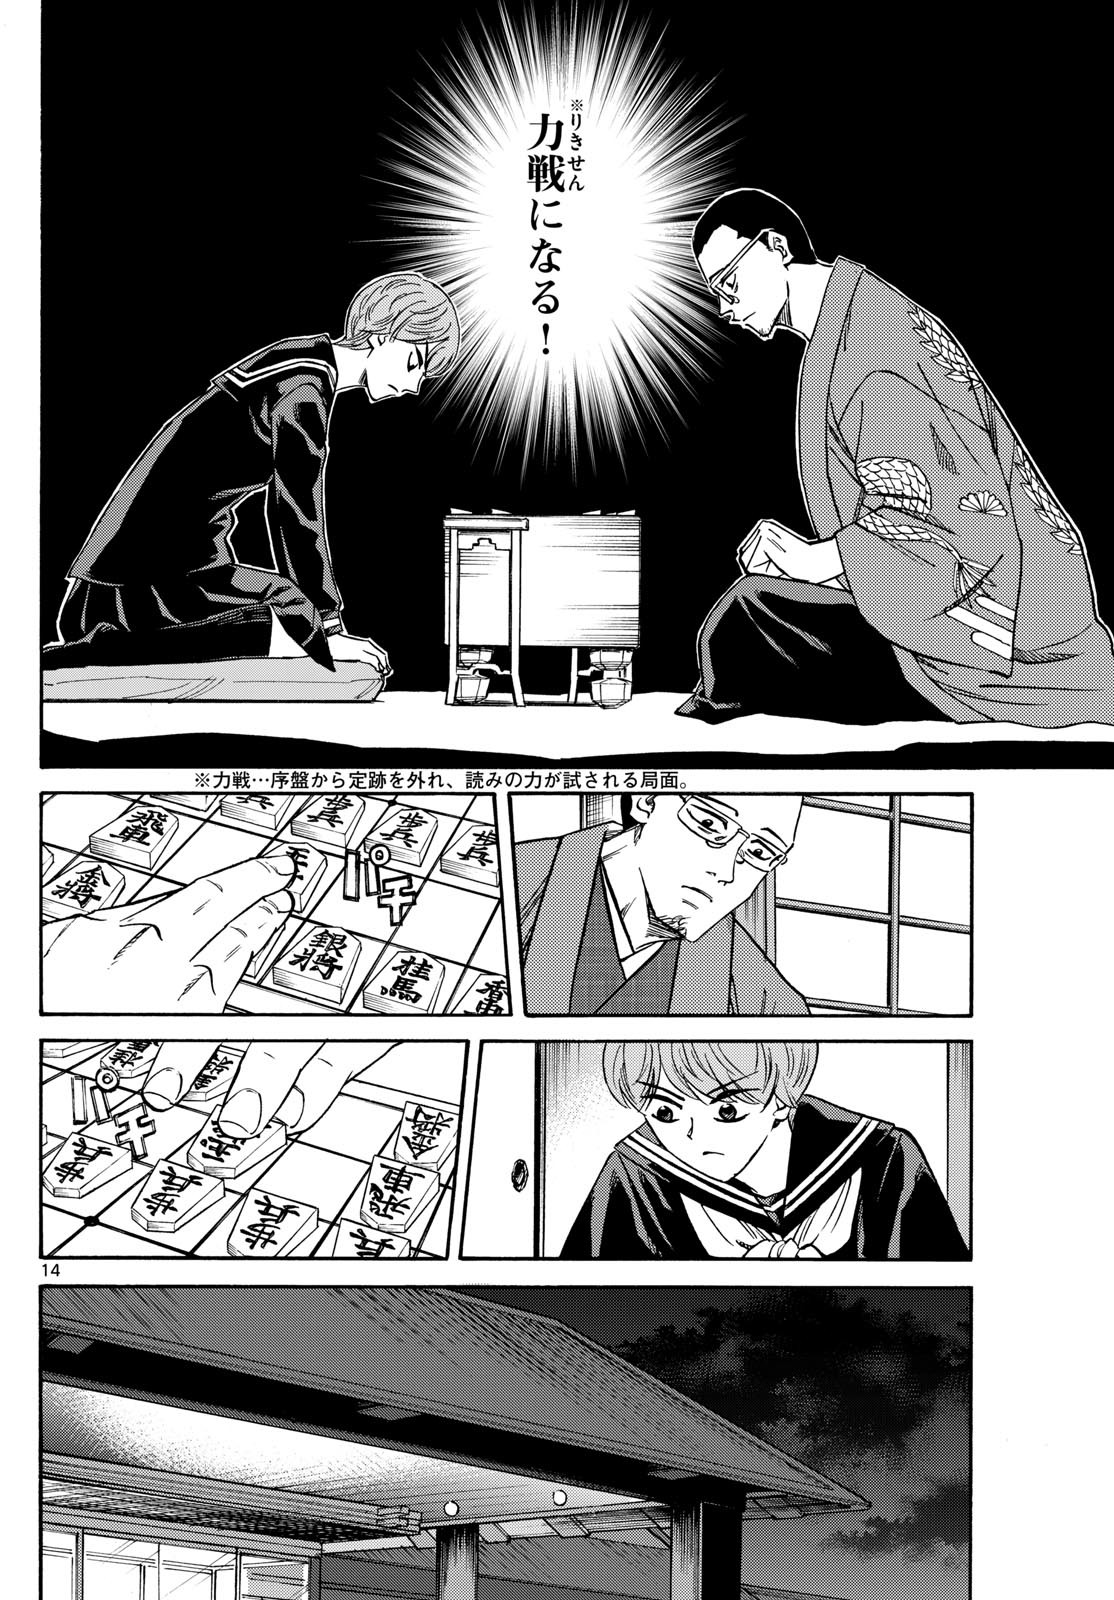 Ryu-to-Ichigo - Chapter 162 - Page 14